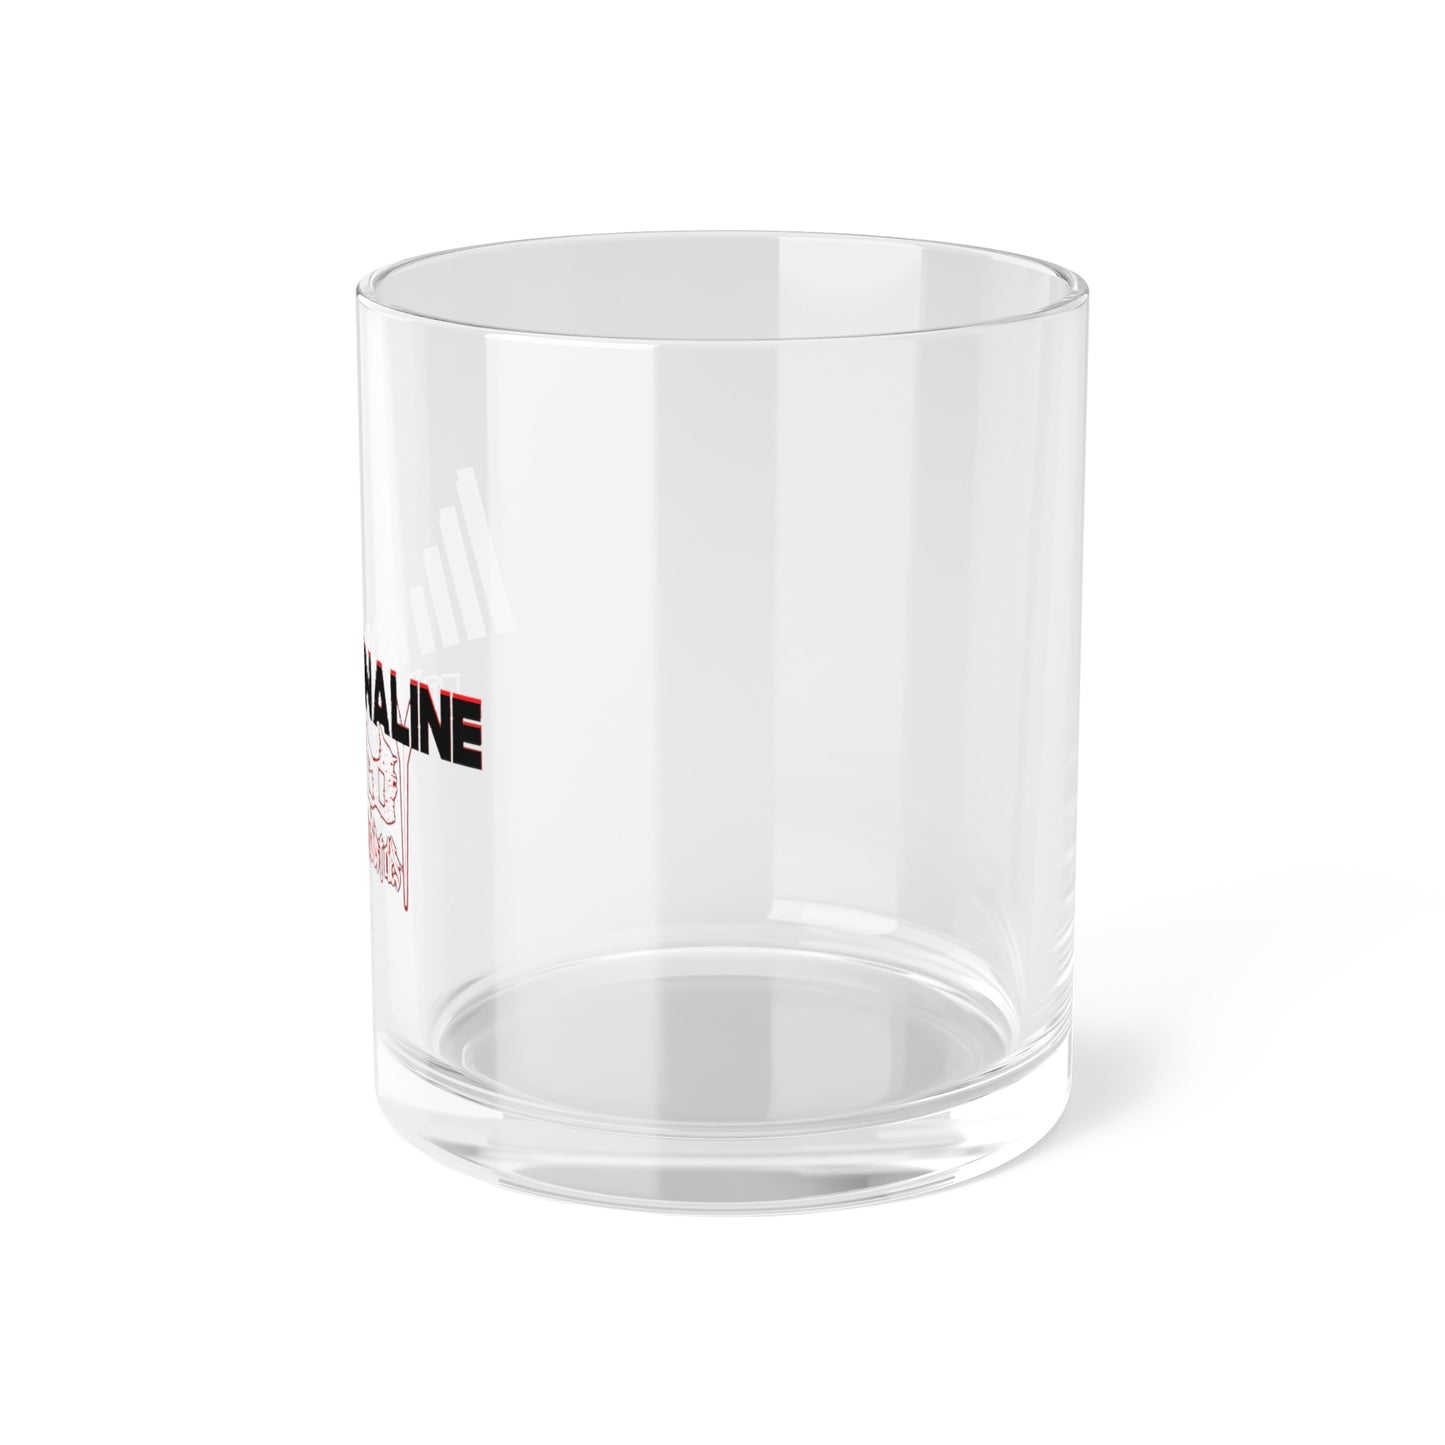 Adrenaline 1 Bar Glass